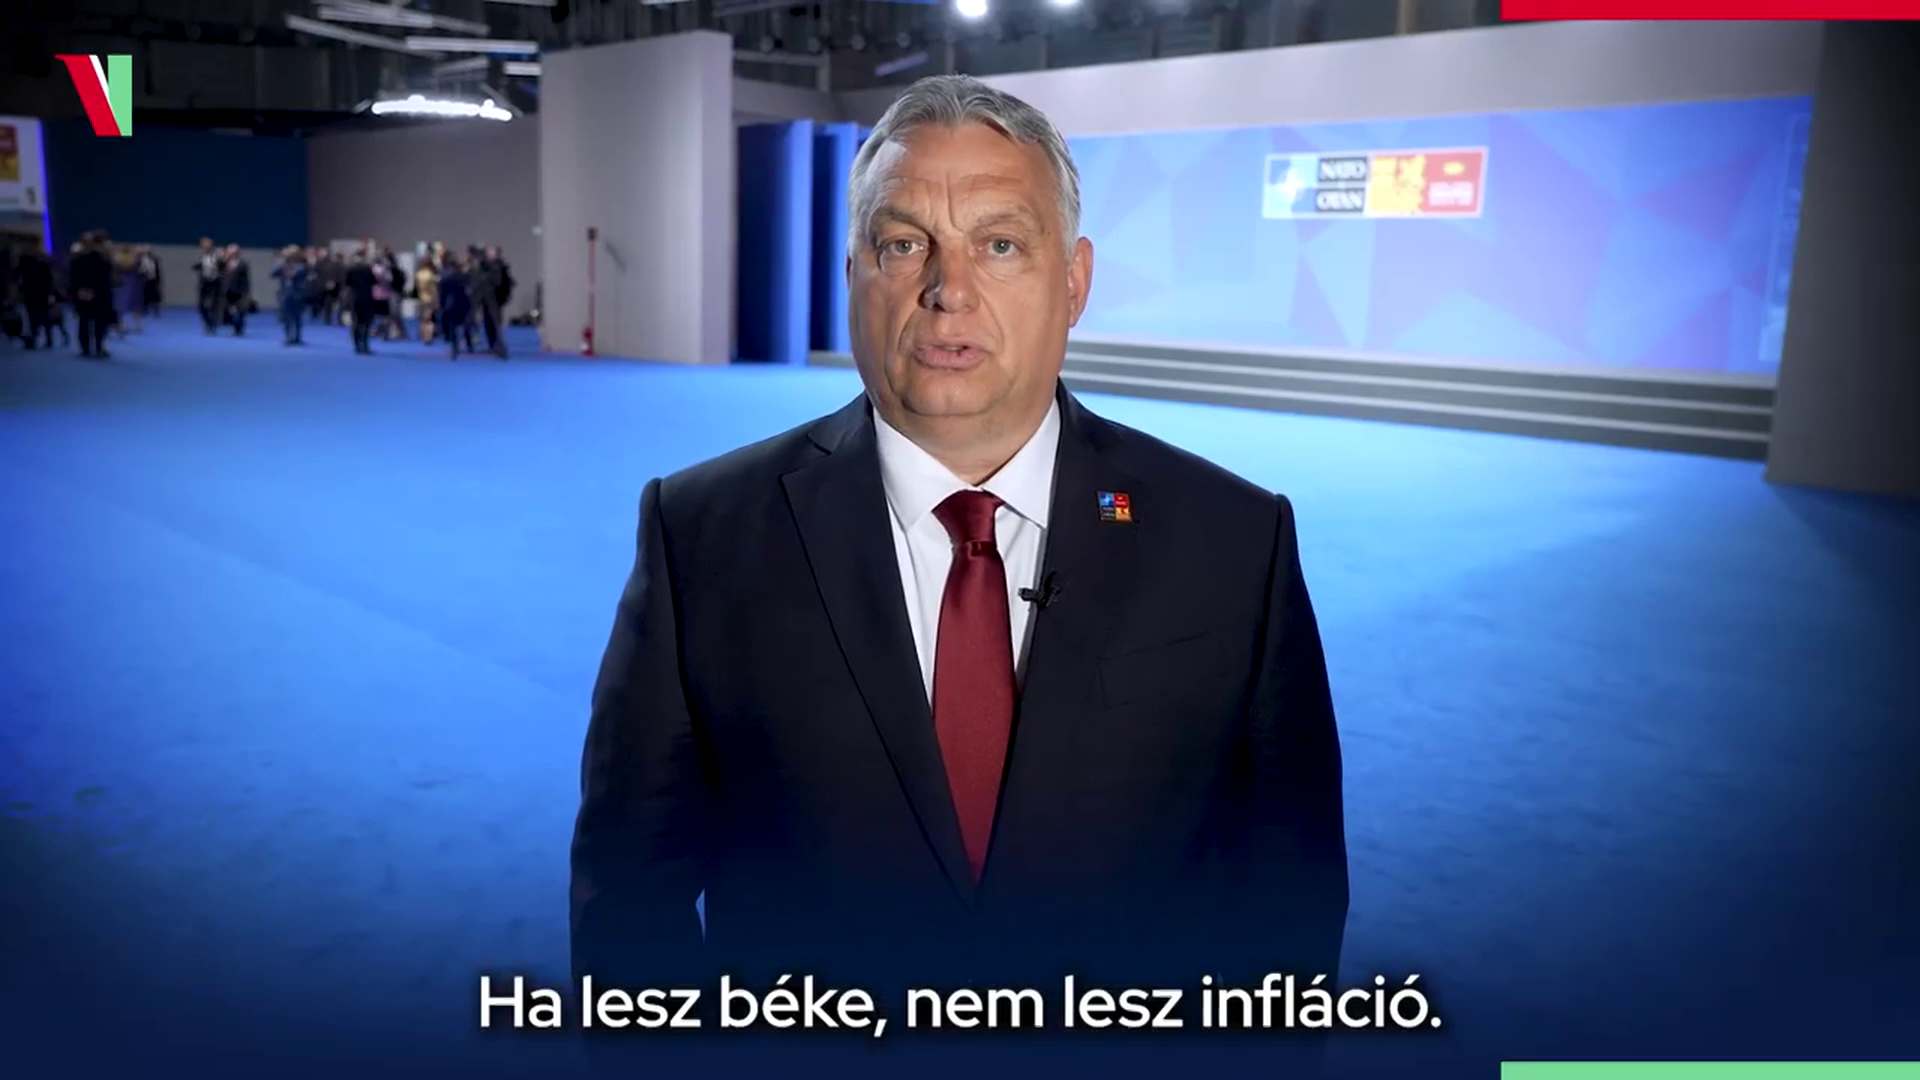 Orbán Viktor: Ha lesz béke, nem lesz infláció